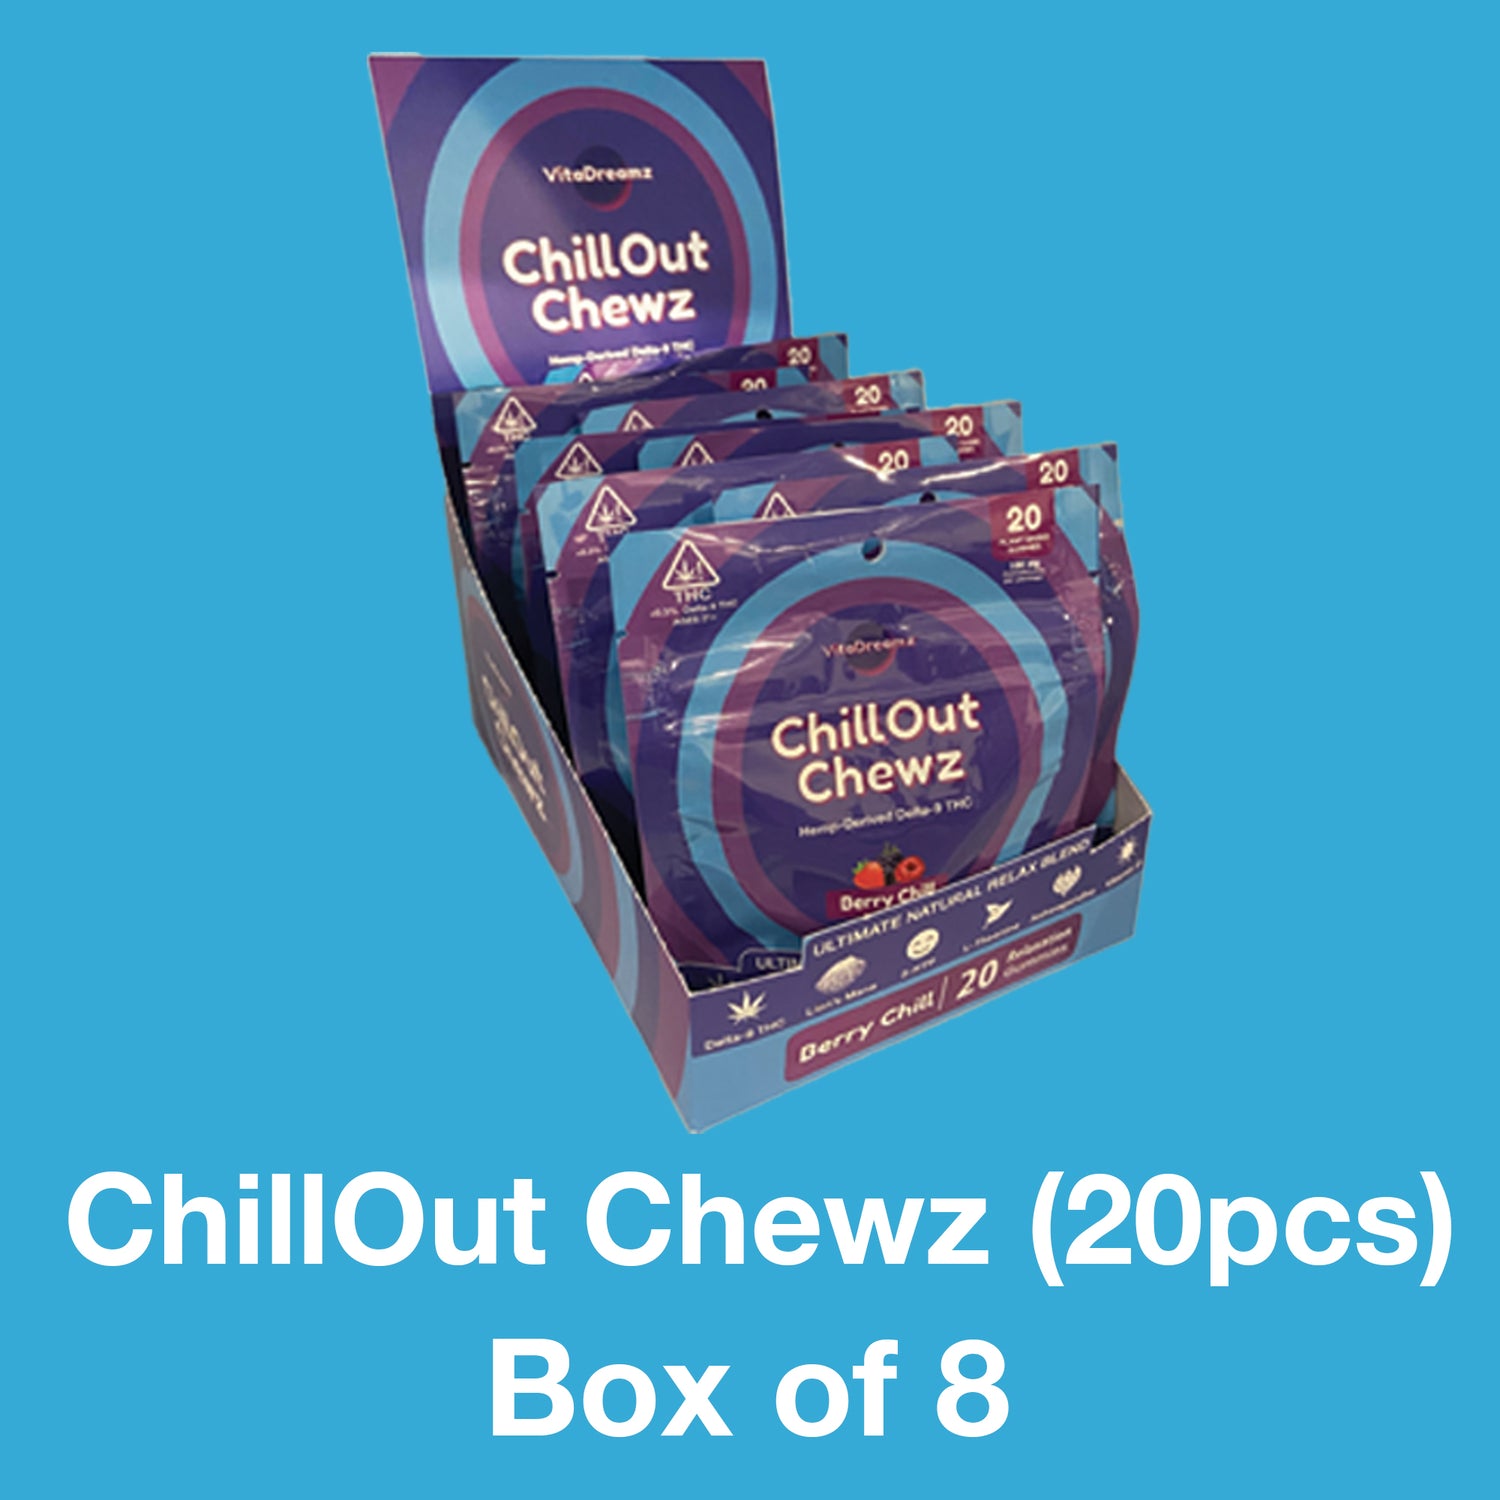 ChillOut CHewz (20ct) - Box of 8 Bags ($12.50 per Bag) - VitaDreamz